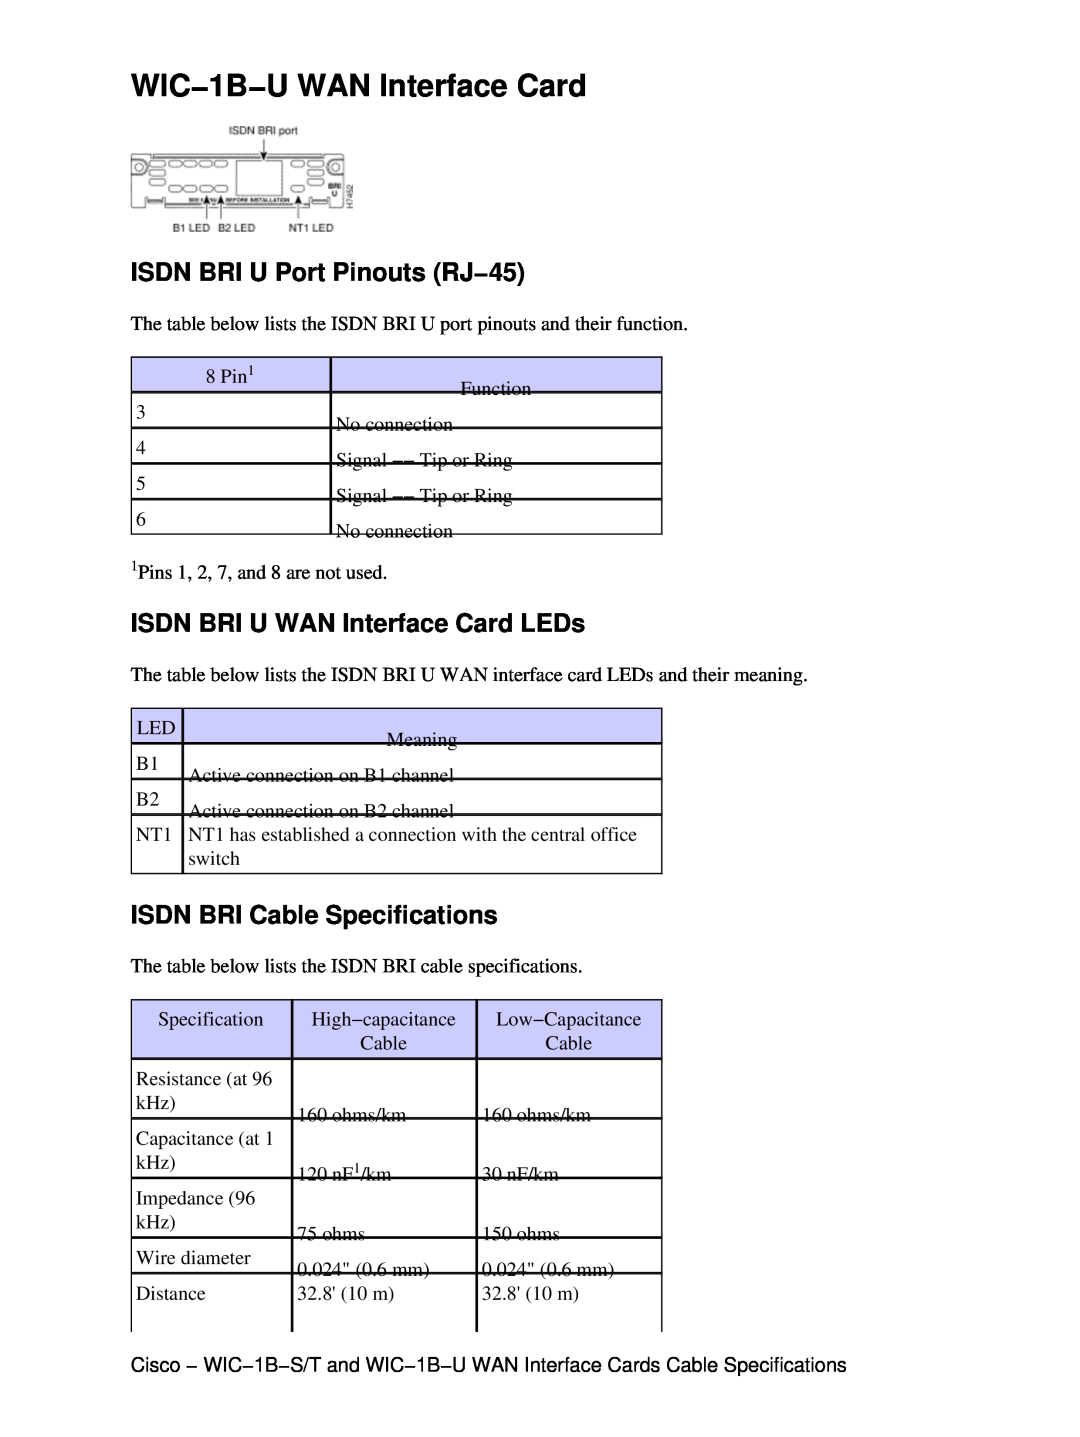 Cisco Systems WIC-1B-U WIC−1B−U WAN Interface Card, ISDN BRI U Port Pinouts RJ−45, ISDN BRI U WAN Interface Card LEDs 